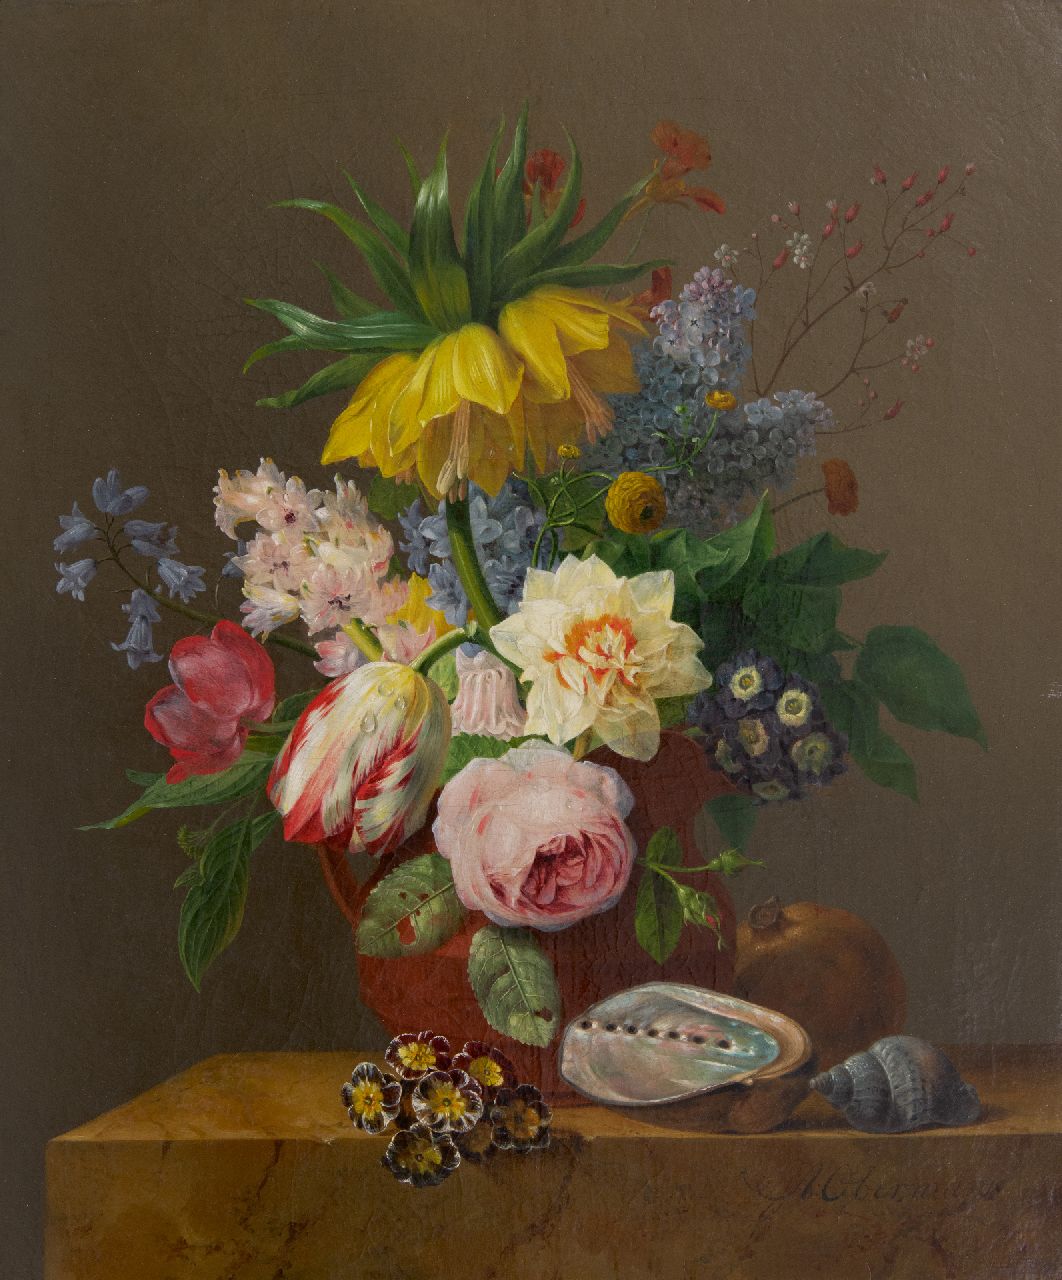 Anthony Oberman | Stilleven met bloemen, granaatappel en schelpen op een marmeren plint, olieverf op doek, 47,0 x 39,5 cm, gesigneerd r.o.